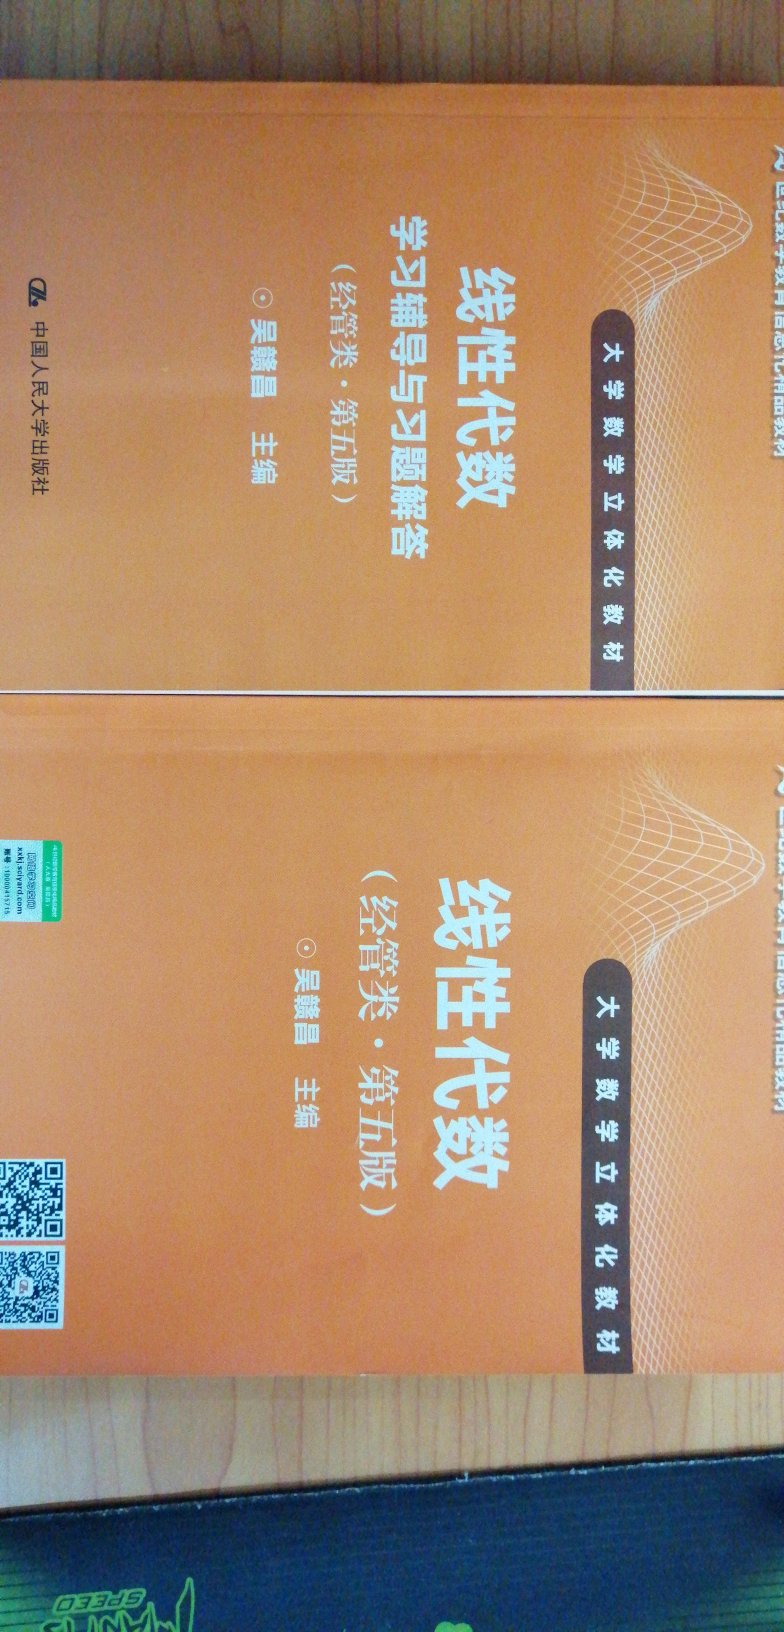 东西蛮好的，喜欢，物有所值，喜欢中国人民大学出版社……快递超赞，支持自营……